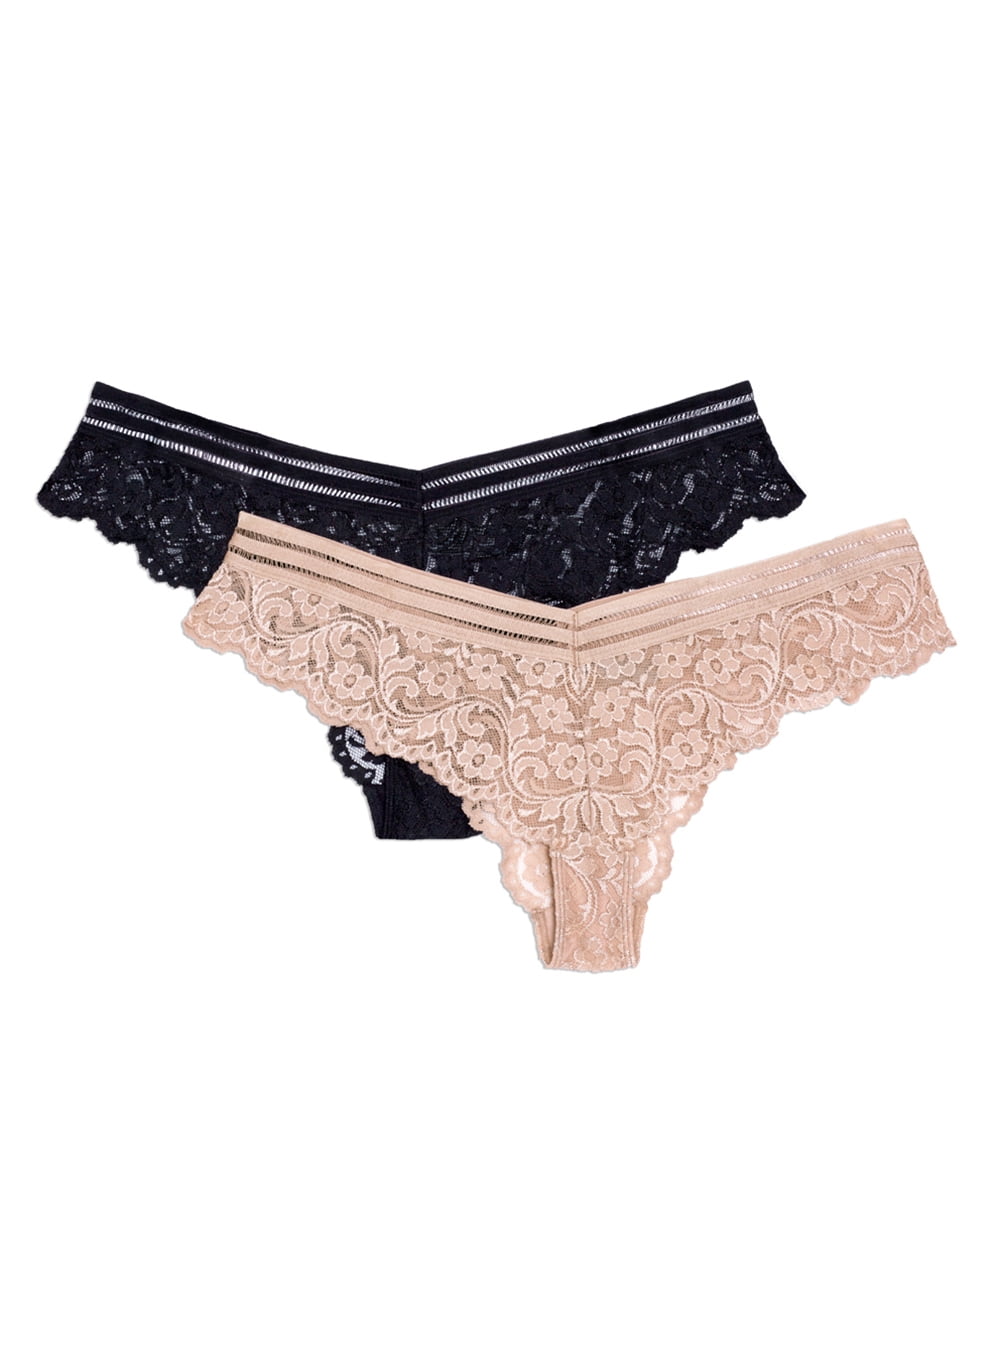 Essentials Women's Cheeky Brazilian Underwear, Pack of 6